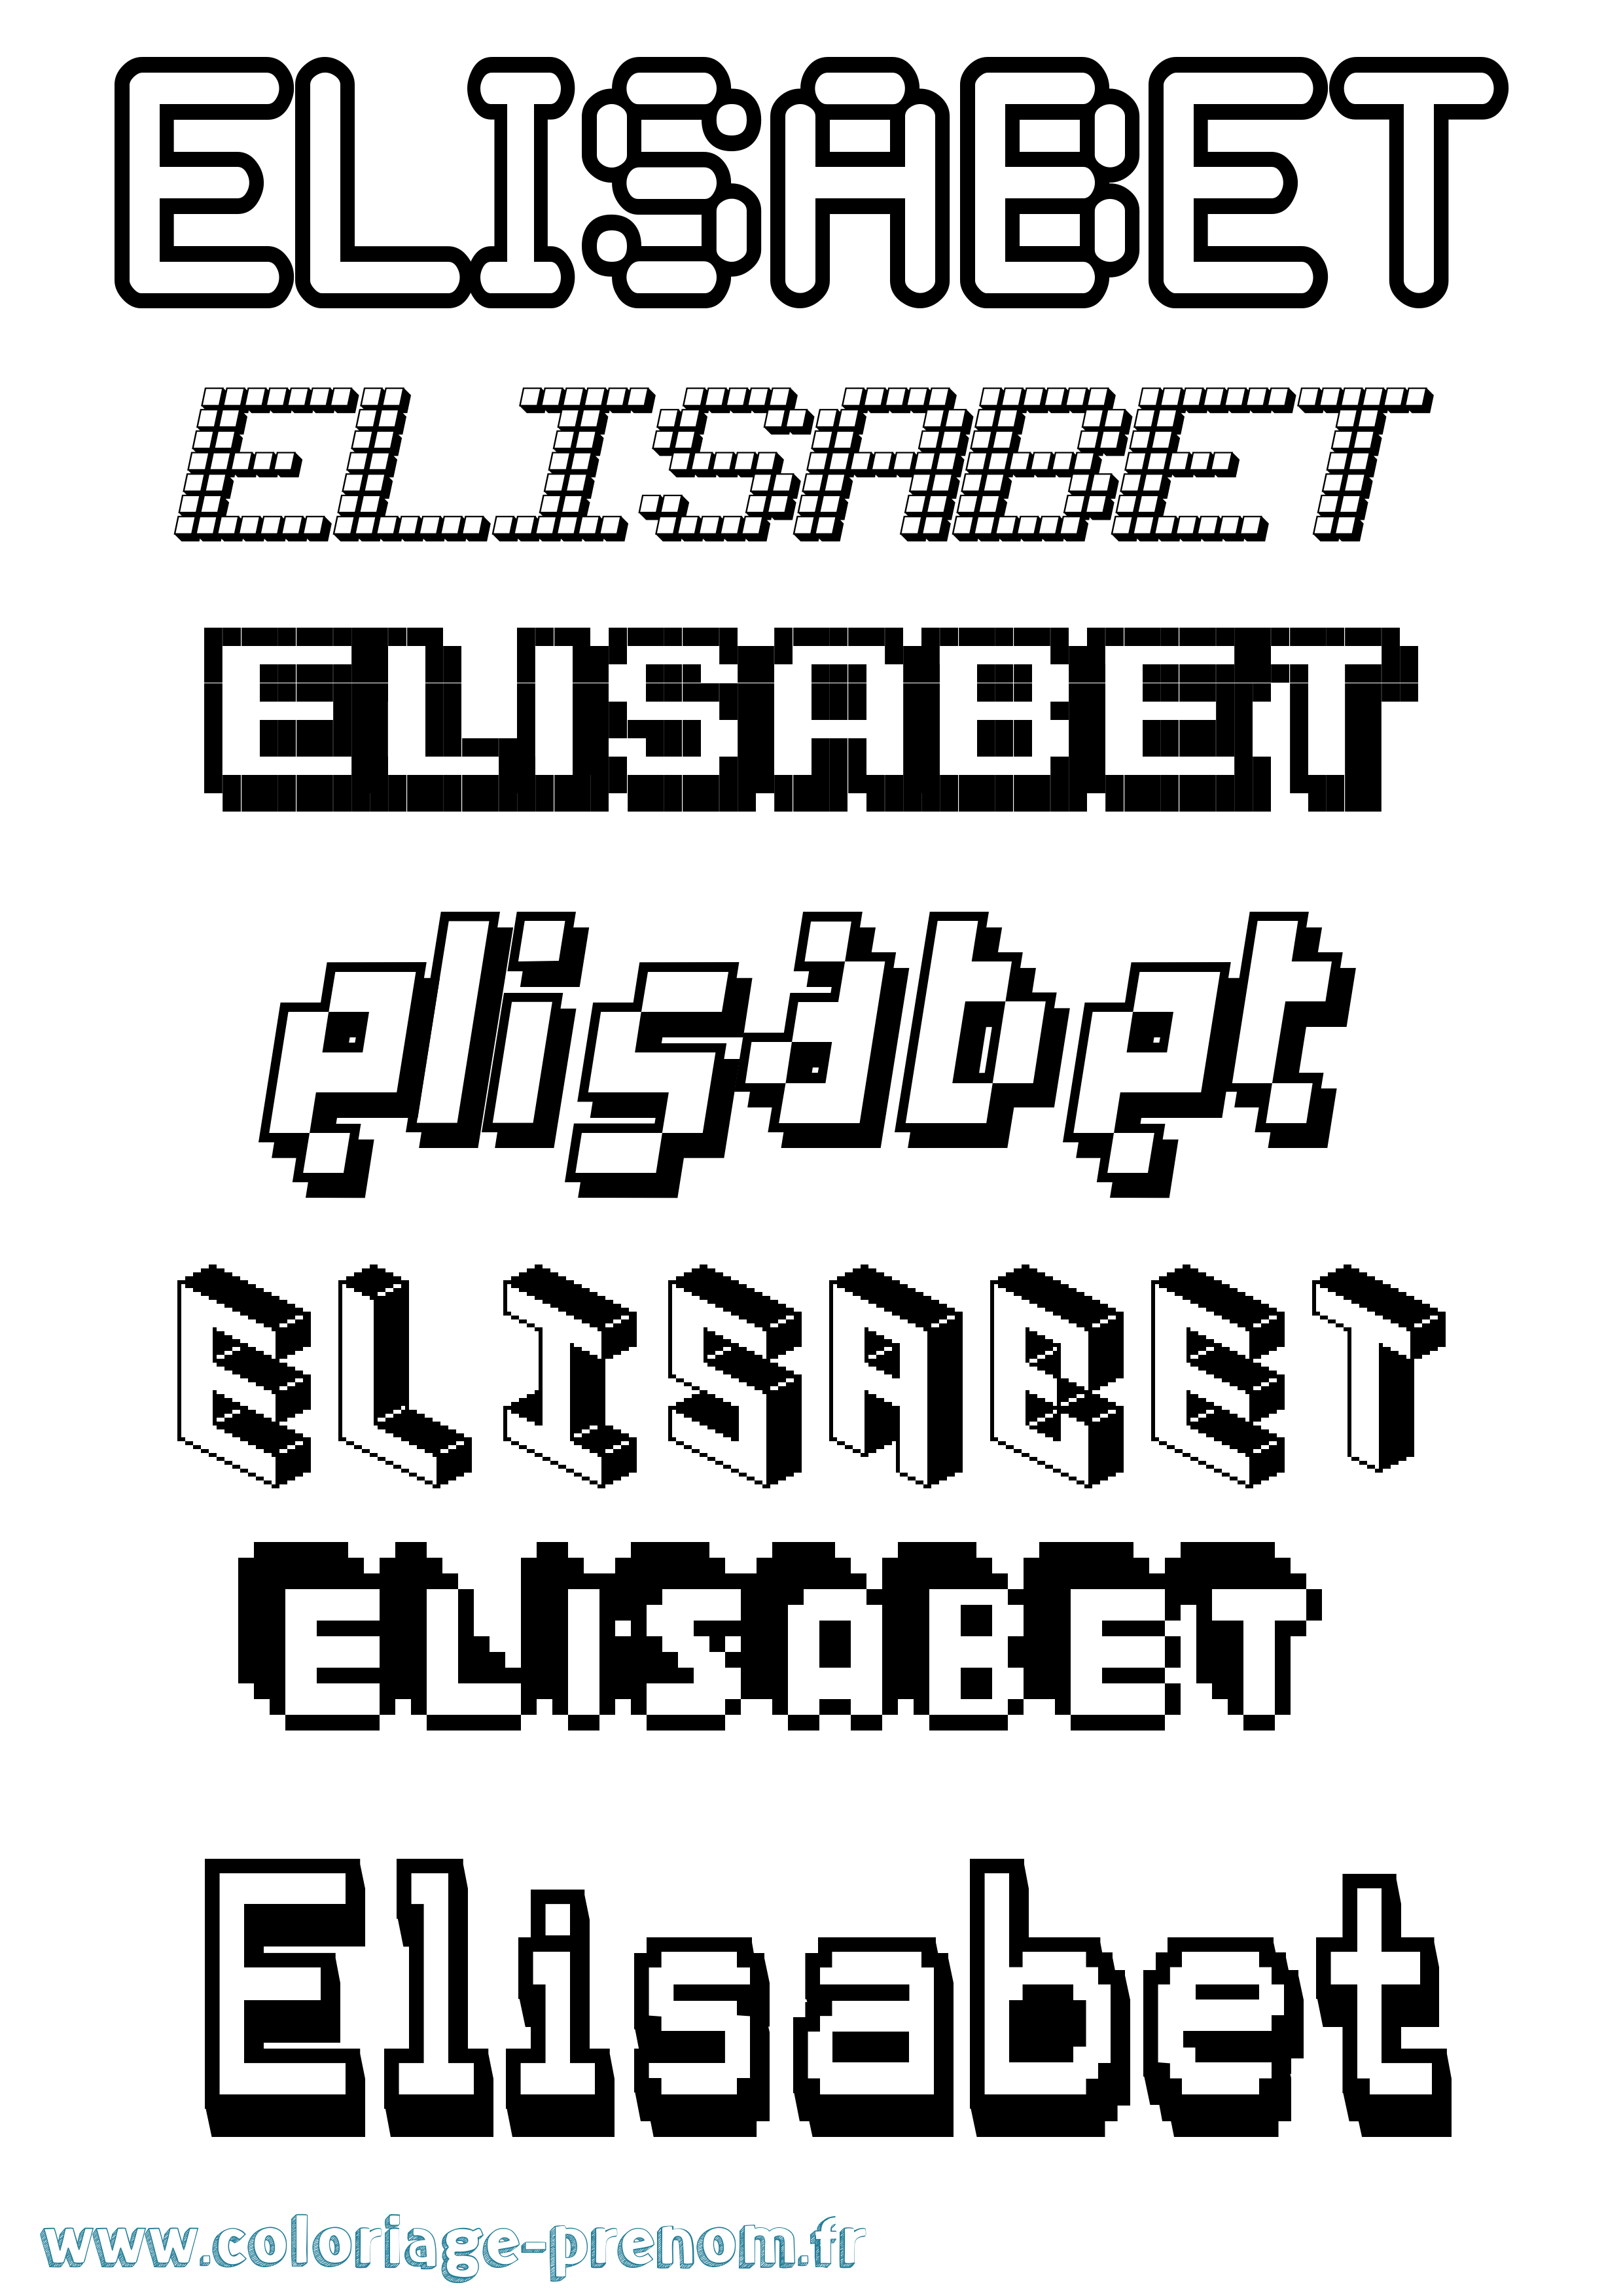 Coloriage prénom Elisabet Pixel